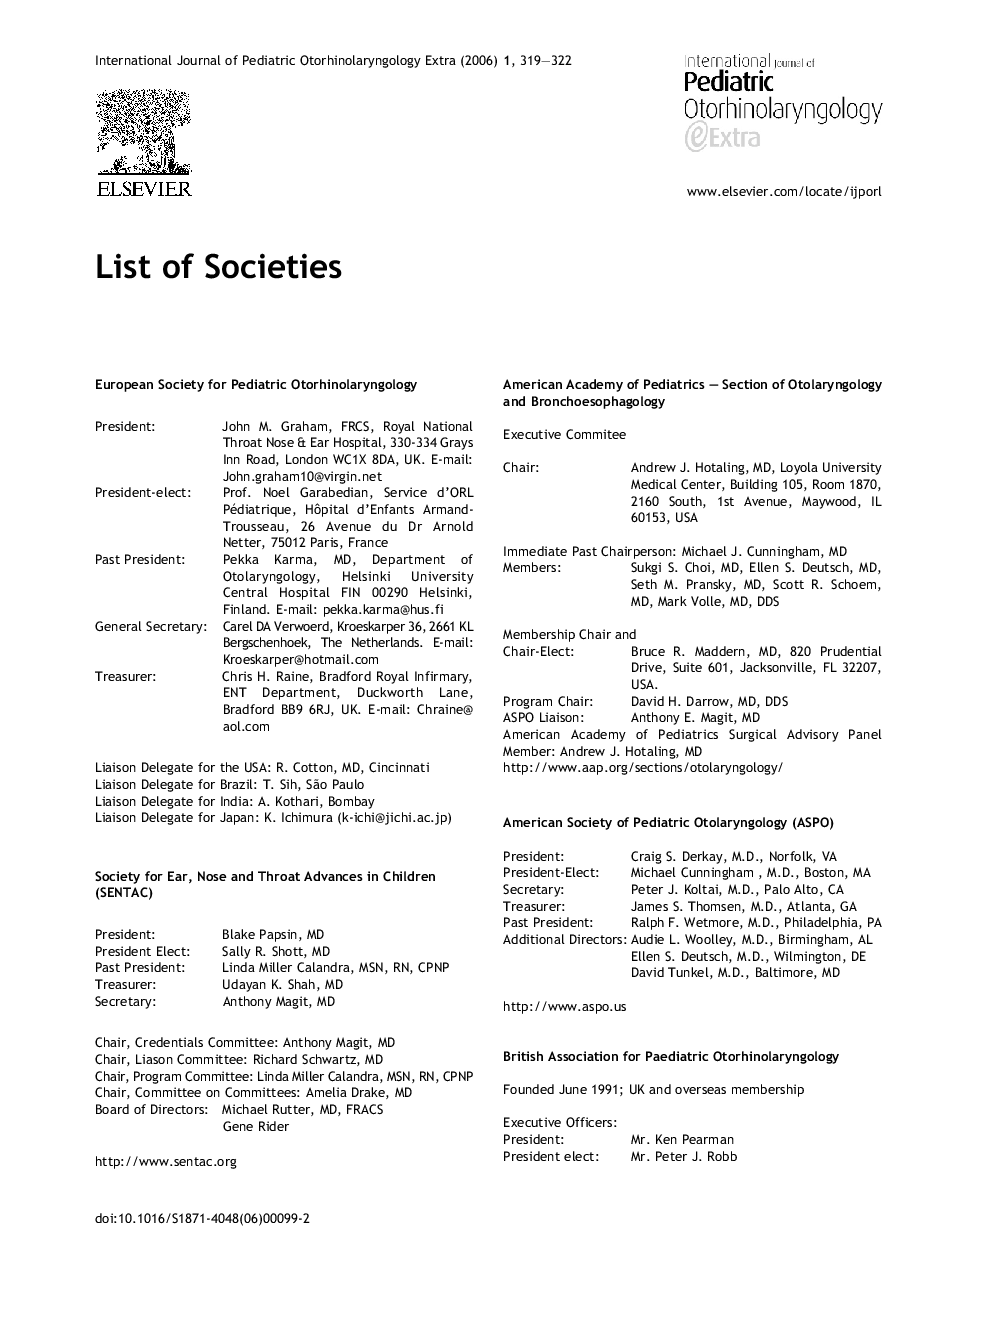 List of Societies